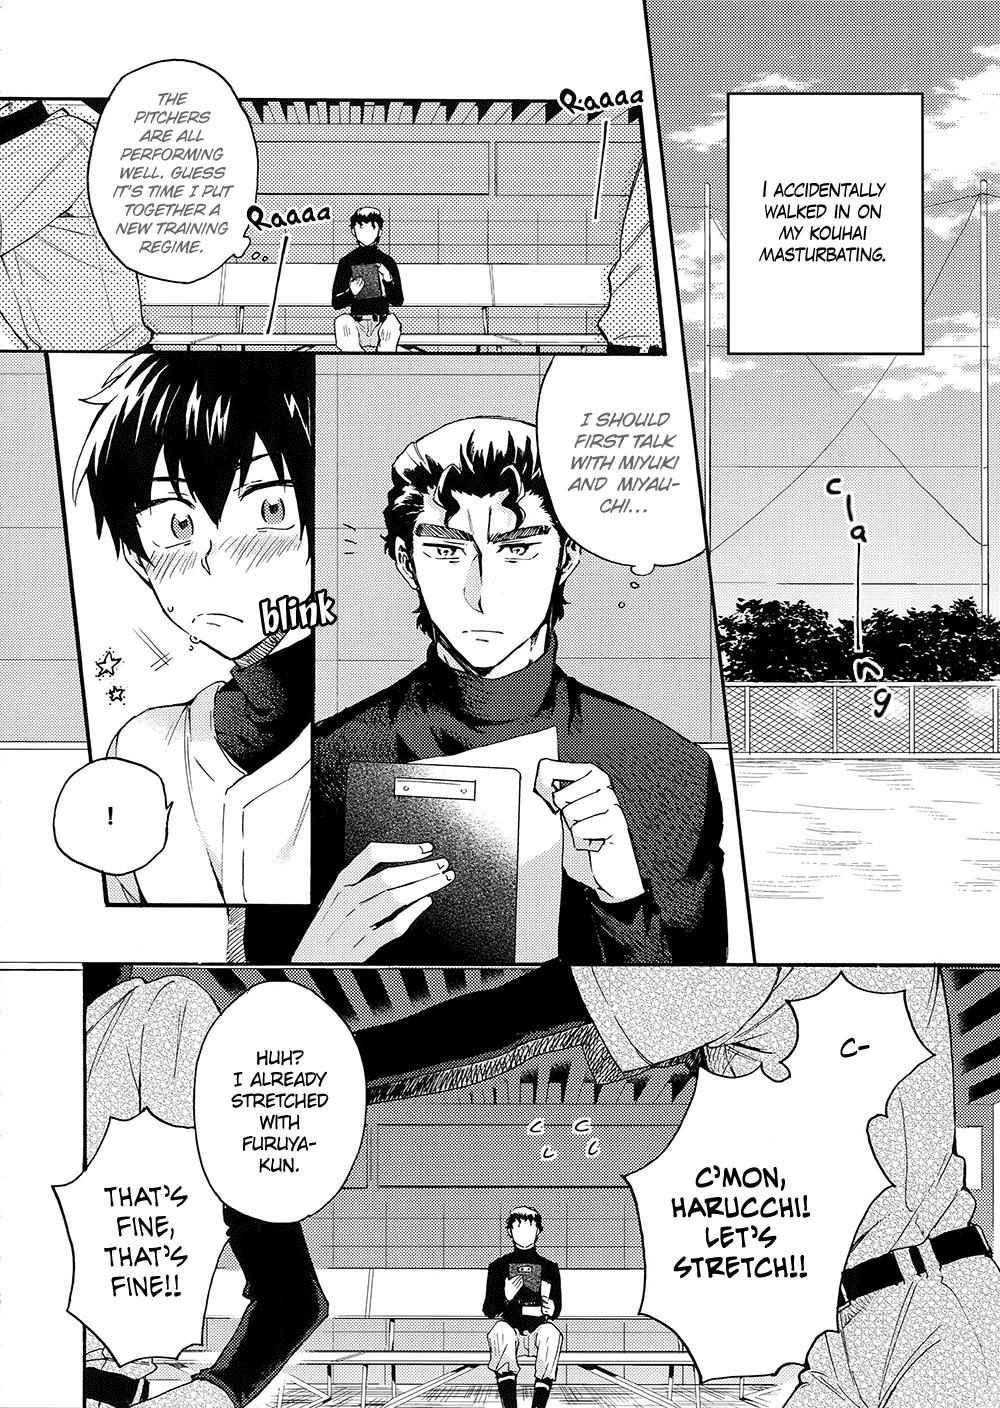 Guy Stop!! Sawamura-kun! - Daiya no ace | ace of diamond Morena - Page 5